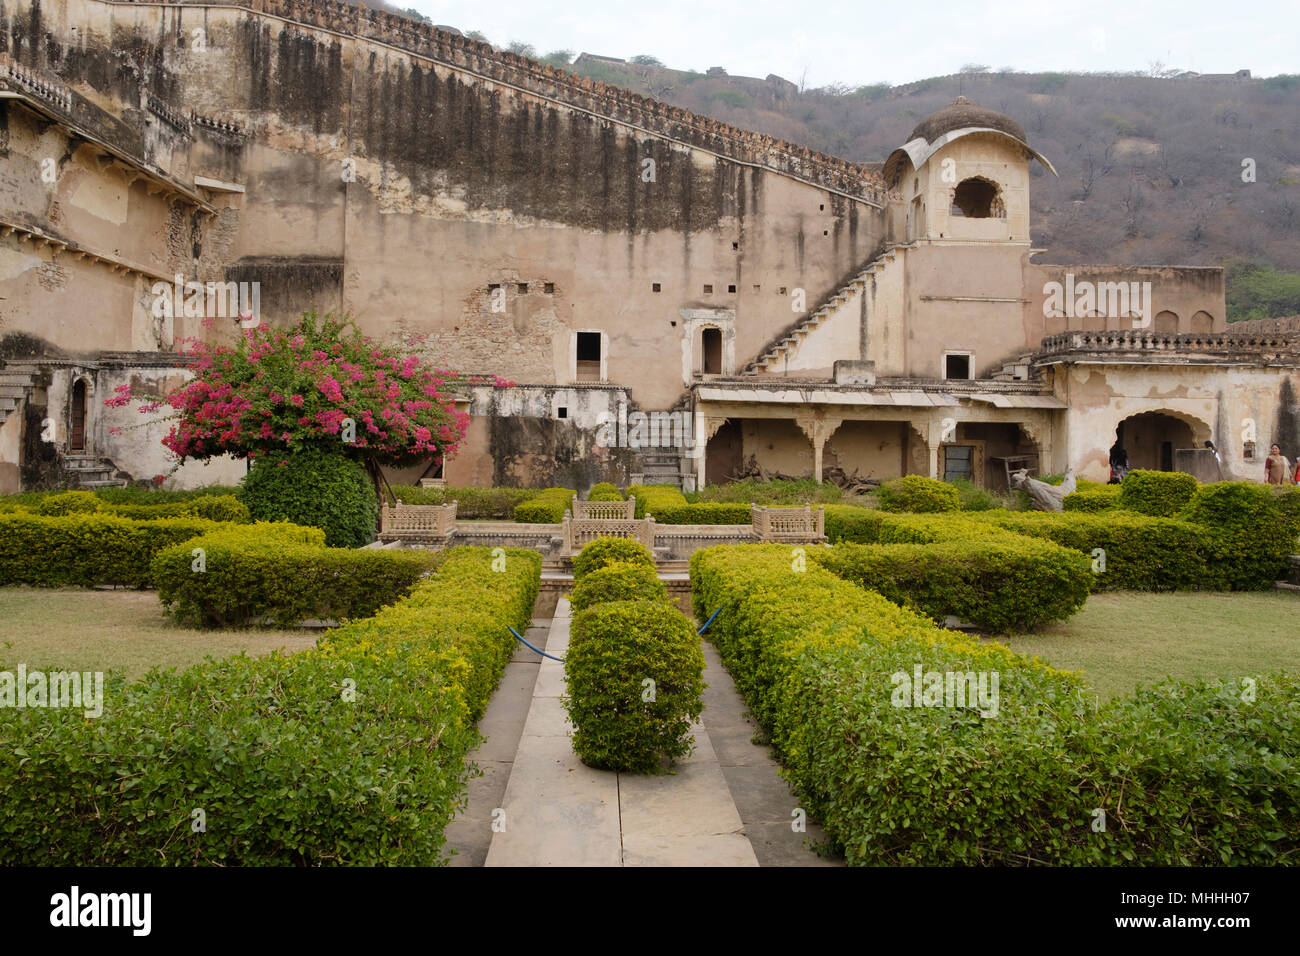 Bundi Palacio. Rajasthan, India. El Bundi Palace está situado en la ladera de la colina adyacente a la Taragarh Fort y es notable por sus espléndidos murales y frescos tradicionales. Foto de stock